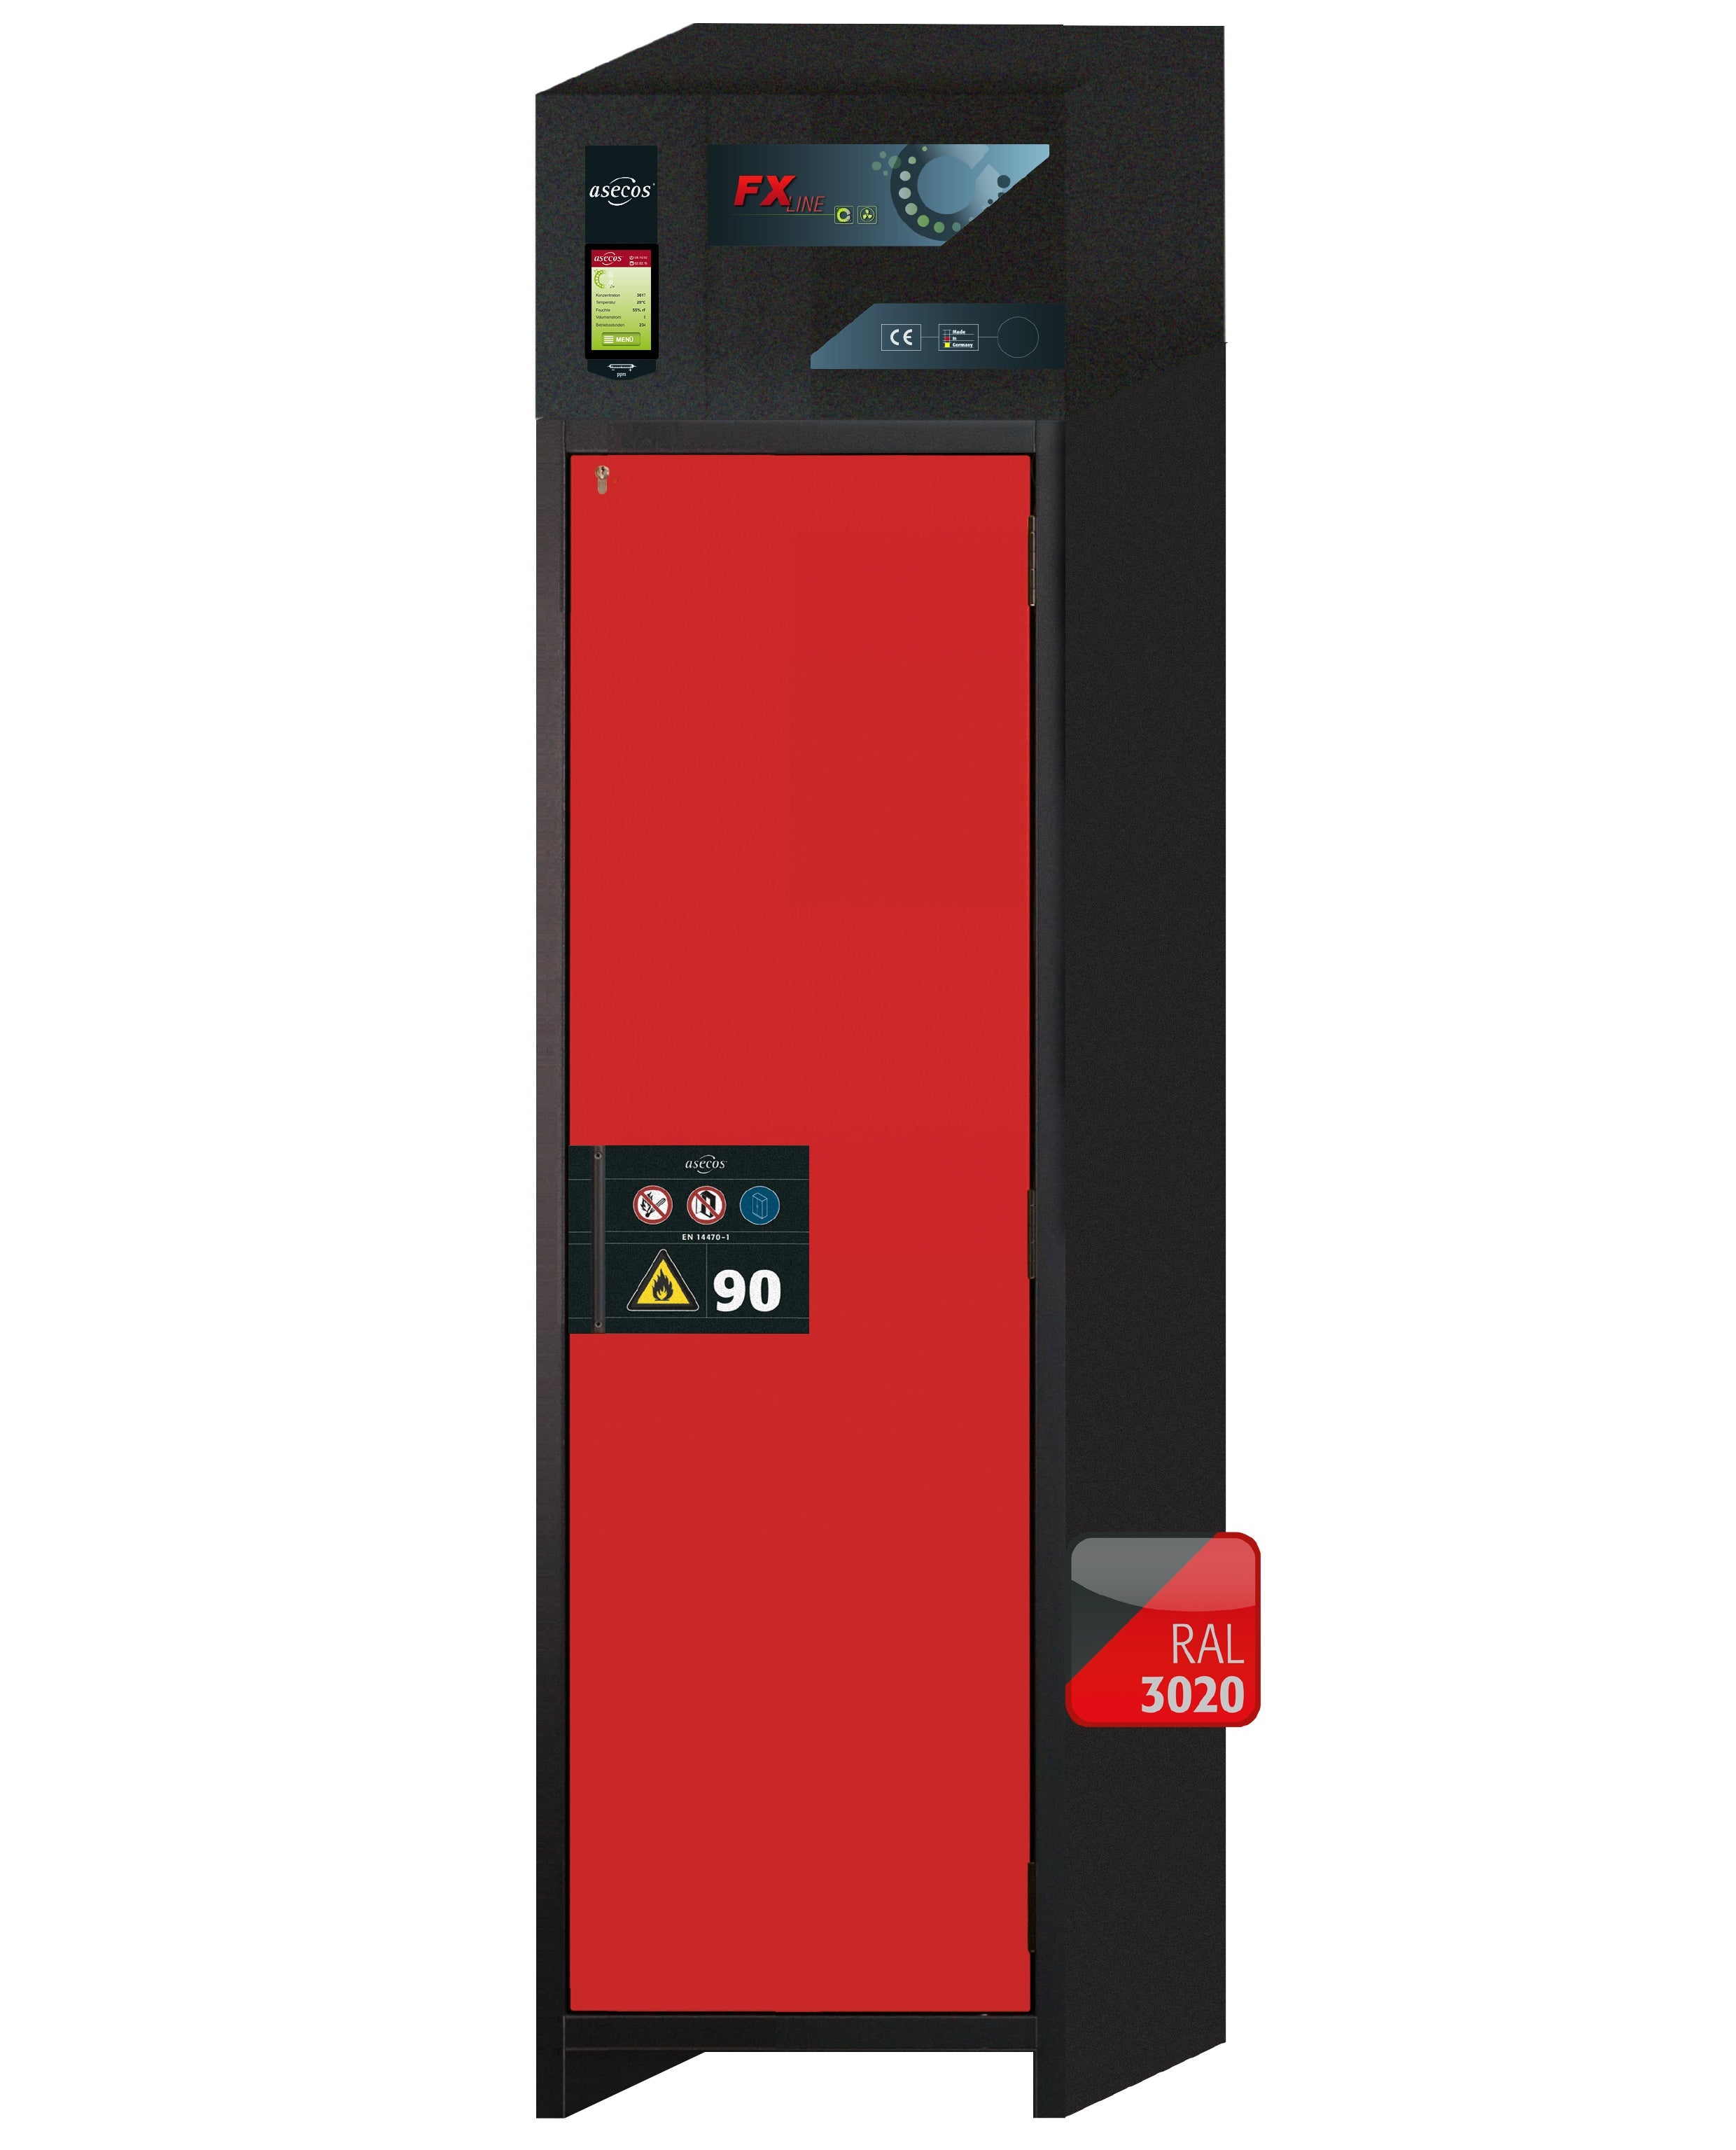 Armoire de filtration d'air de recirculation de type 90 FX-PEGASUS-90 modèle FX90.229.060.WDACR en rouge signalisation RAL 3020 avec 2x pieds de plateau standard (acier inoxydable 1.4301)